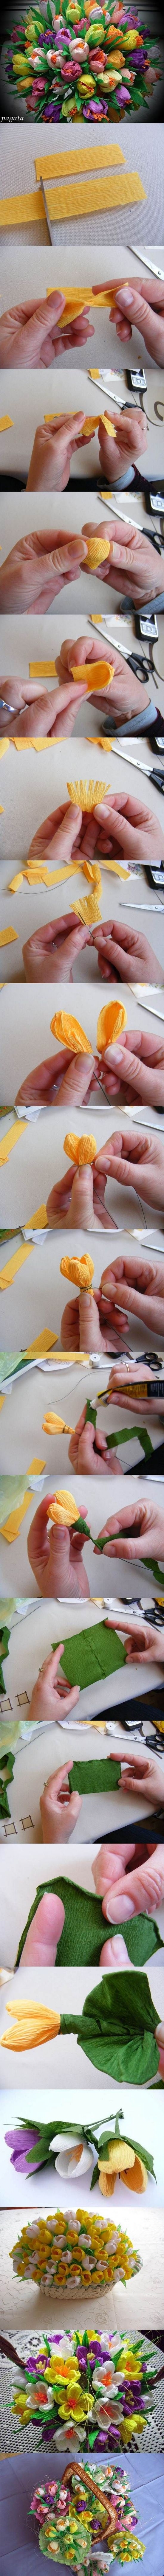 Как сделать тюльпан из бумаги своими руками поэтапно?